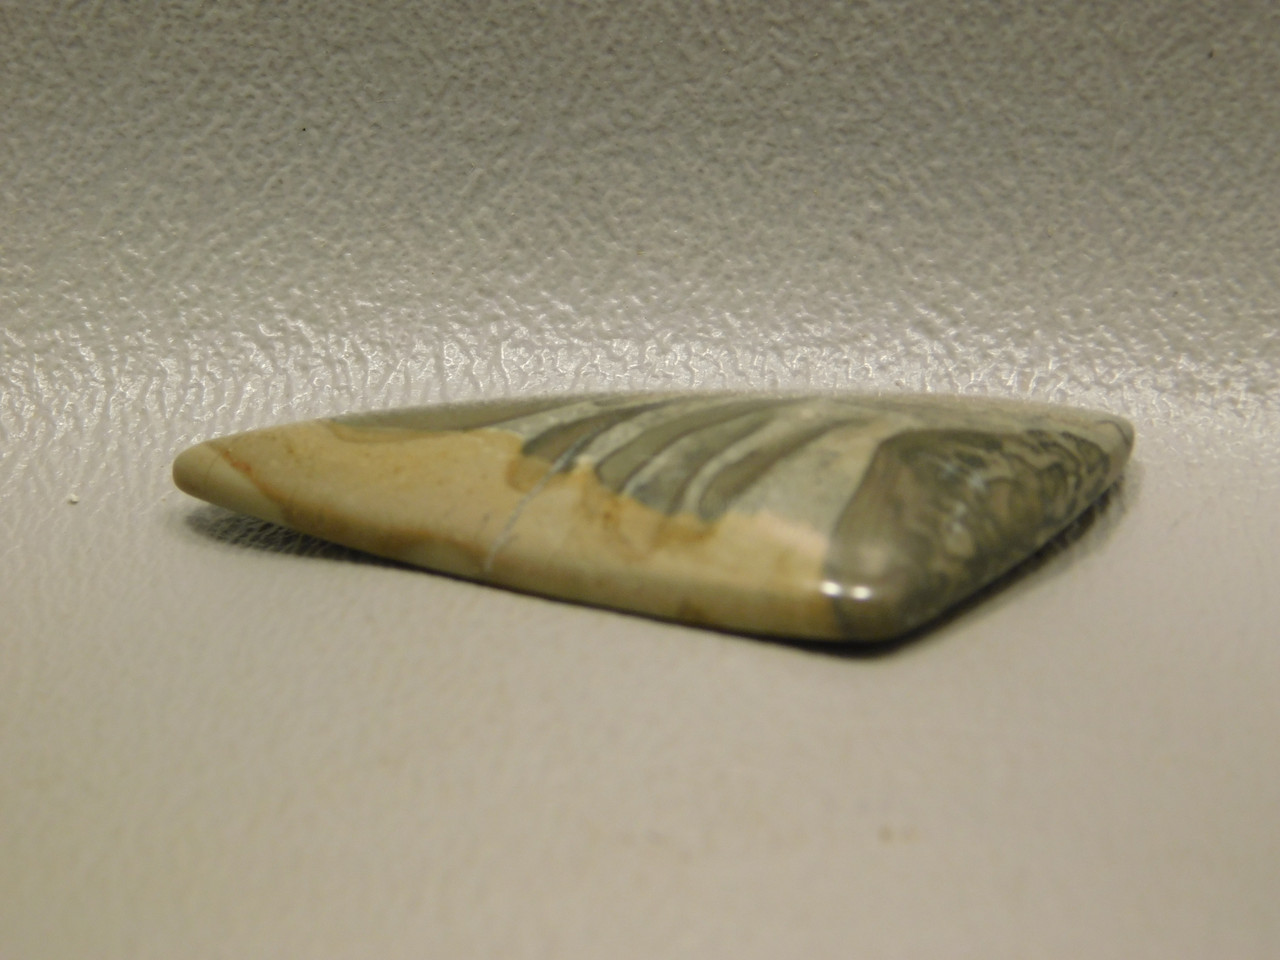 Cotham Marble Cabochon Fossil Stromatolite Triangle Stone #17